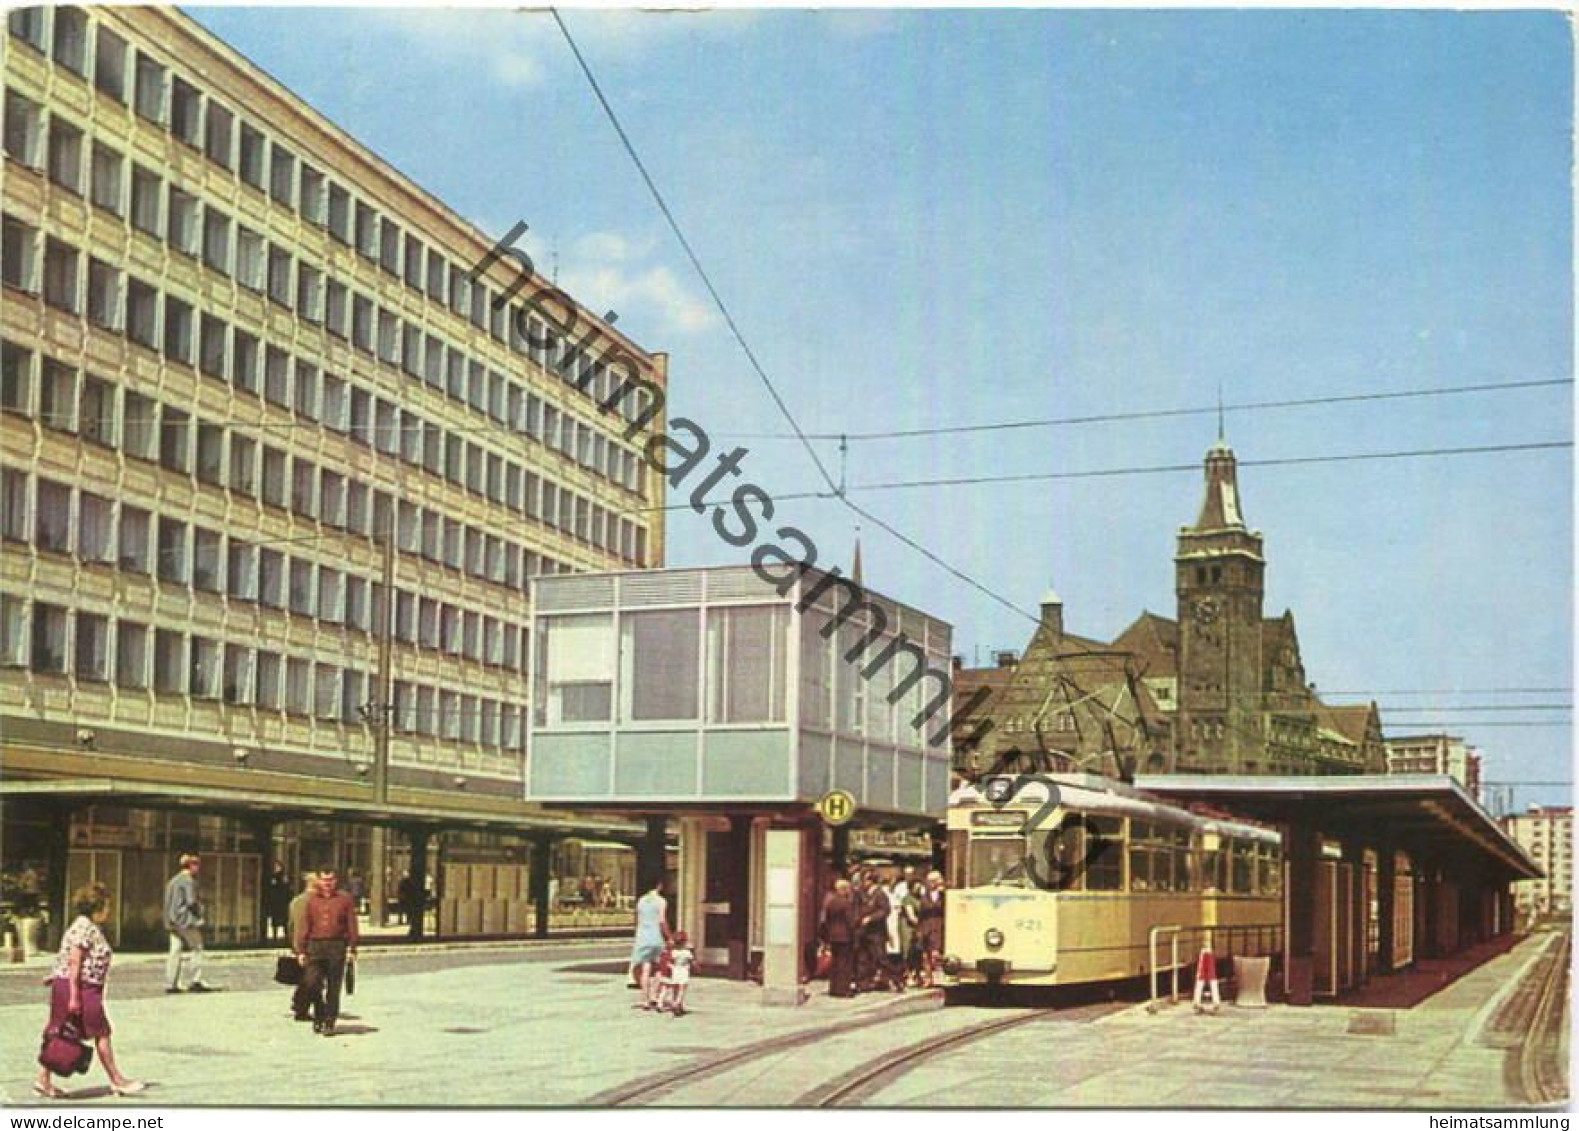 Karl-Marx-Stadt - Zentralhaltestelle - Strassenbahn - AK-Grossformat - Verlag Erhard Neubert Karl-Marx-Stadt - Chemnitz (Karl-Marx-Stadt 1953-1990)